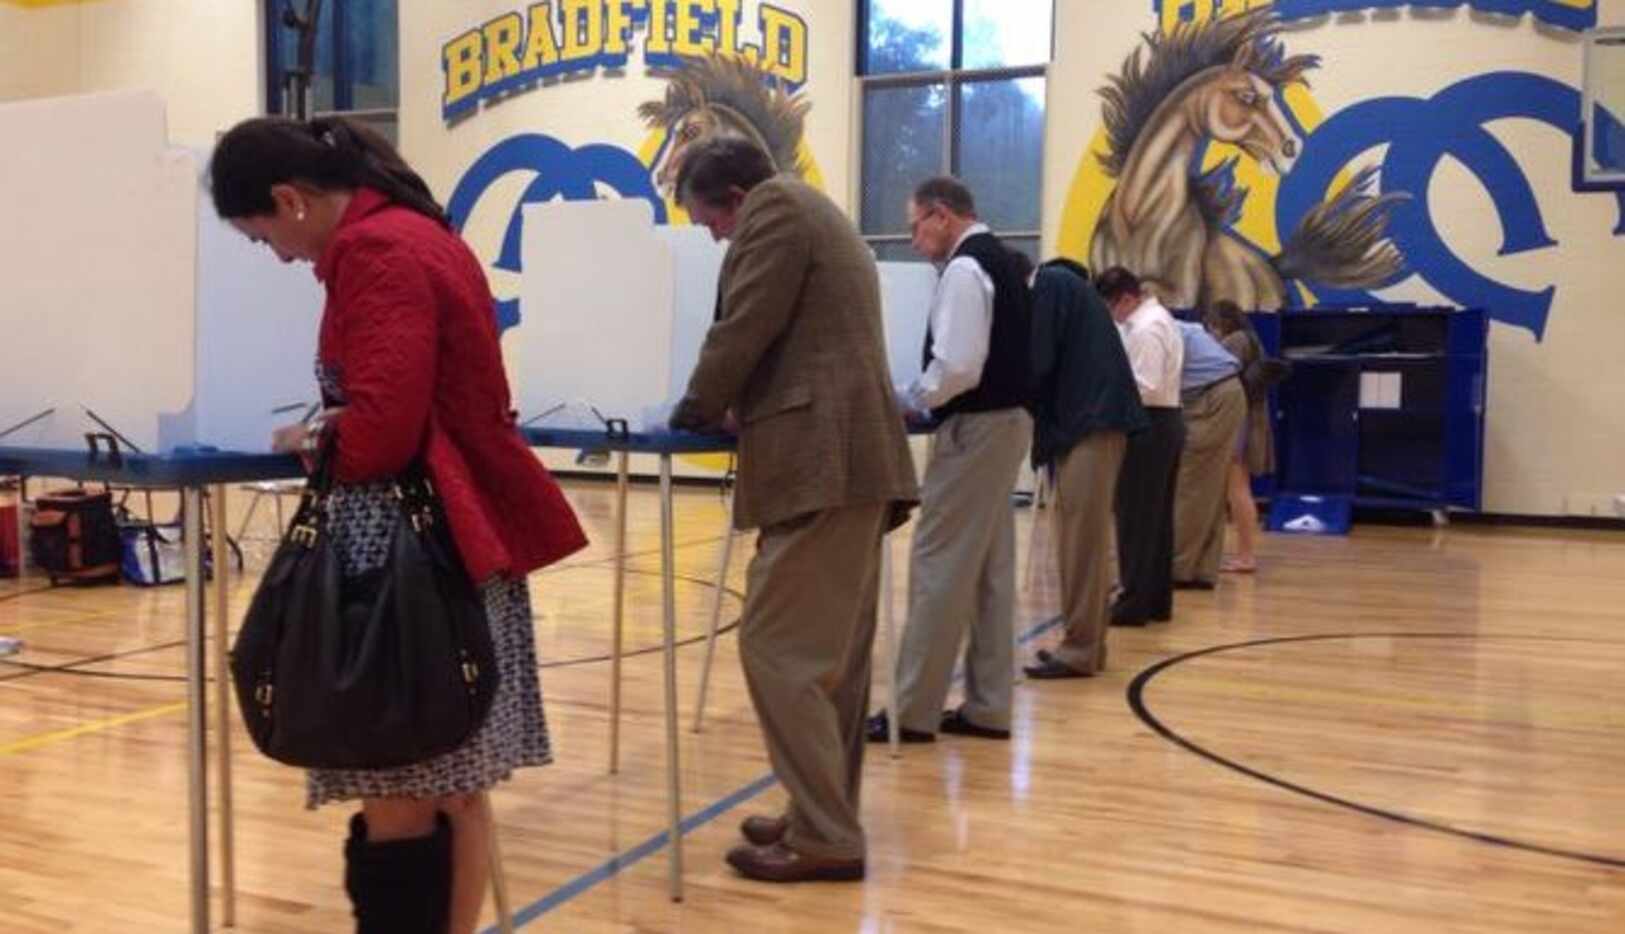 Votantes que residen en el condado de Dallas sufragan en la primaria Bradfield de Highland...